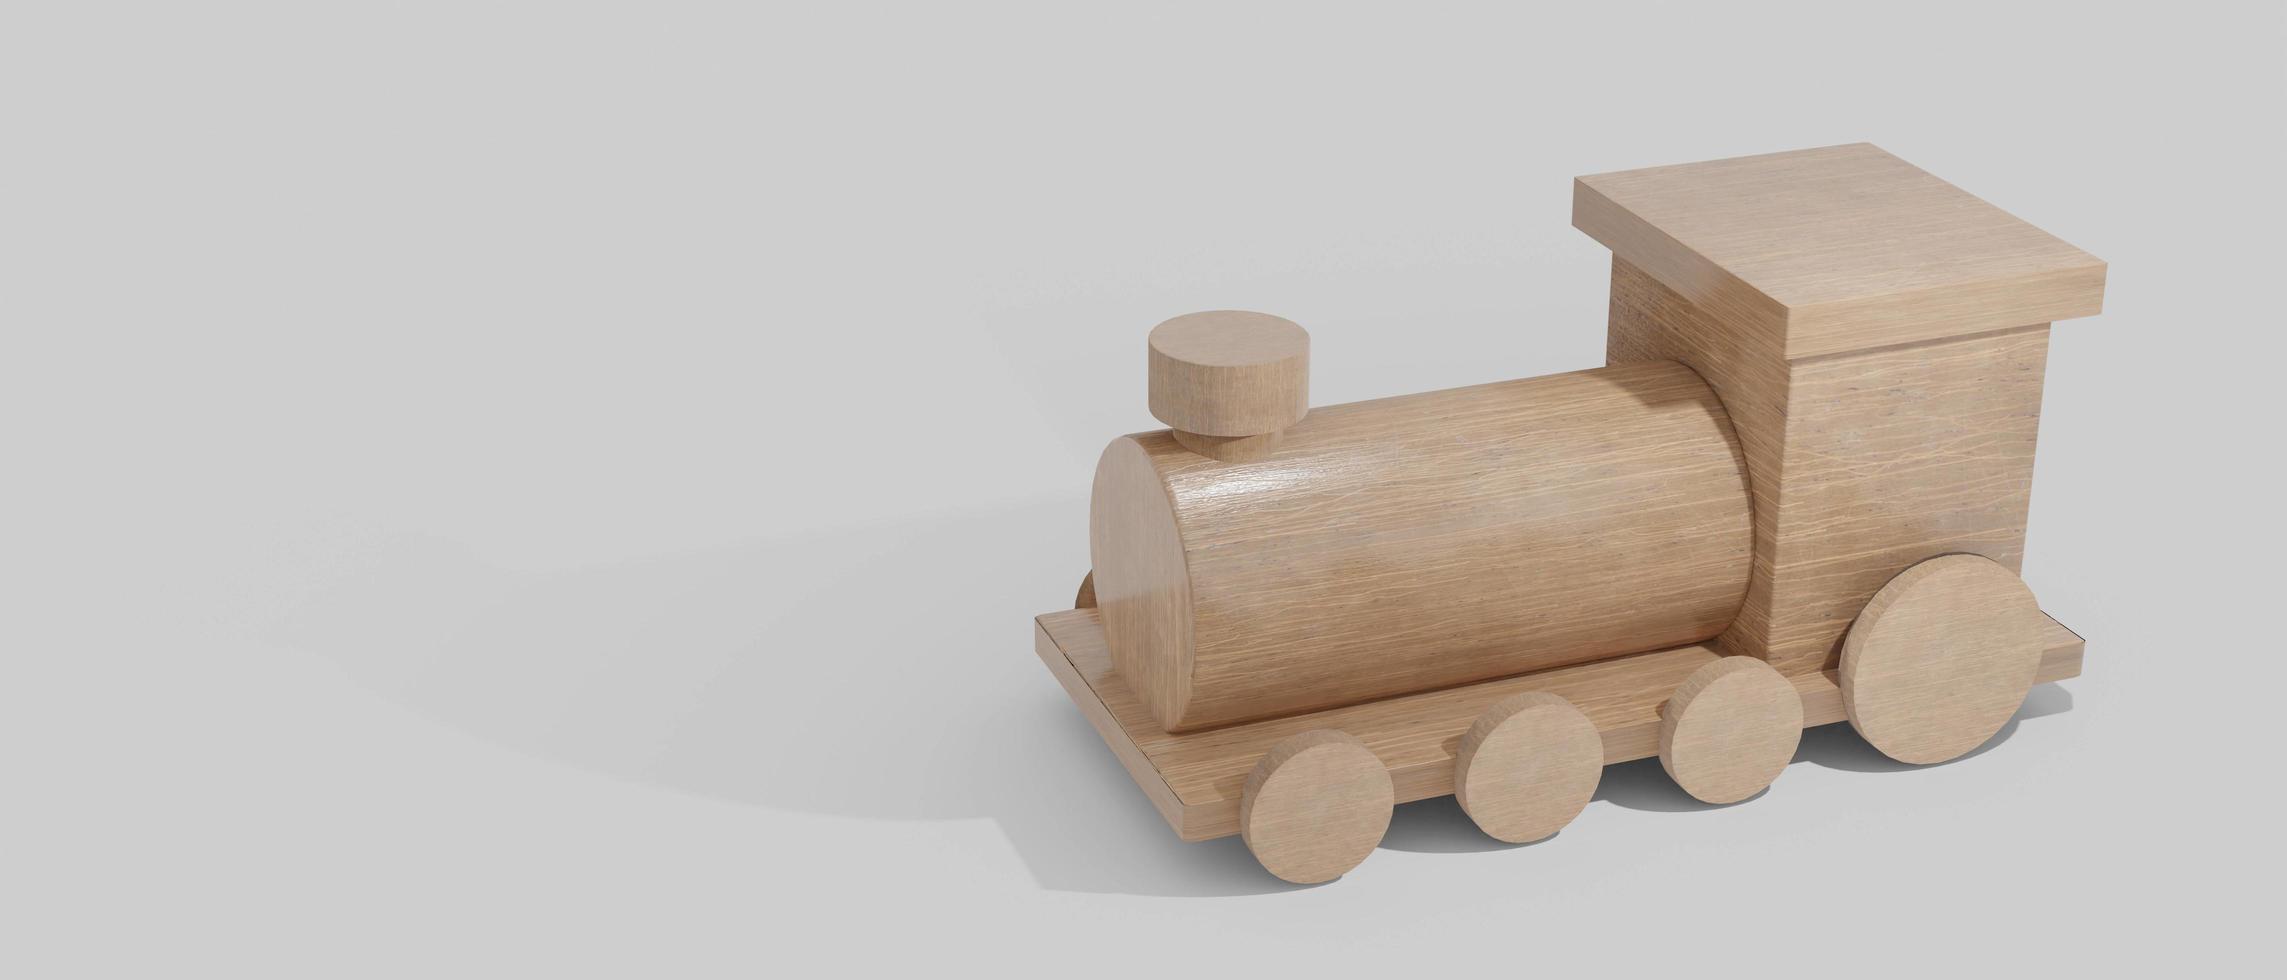 trem de brinquedo feito de madeira. renderização em 3D foto